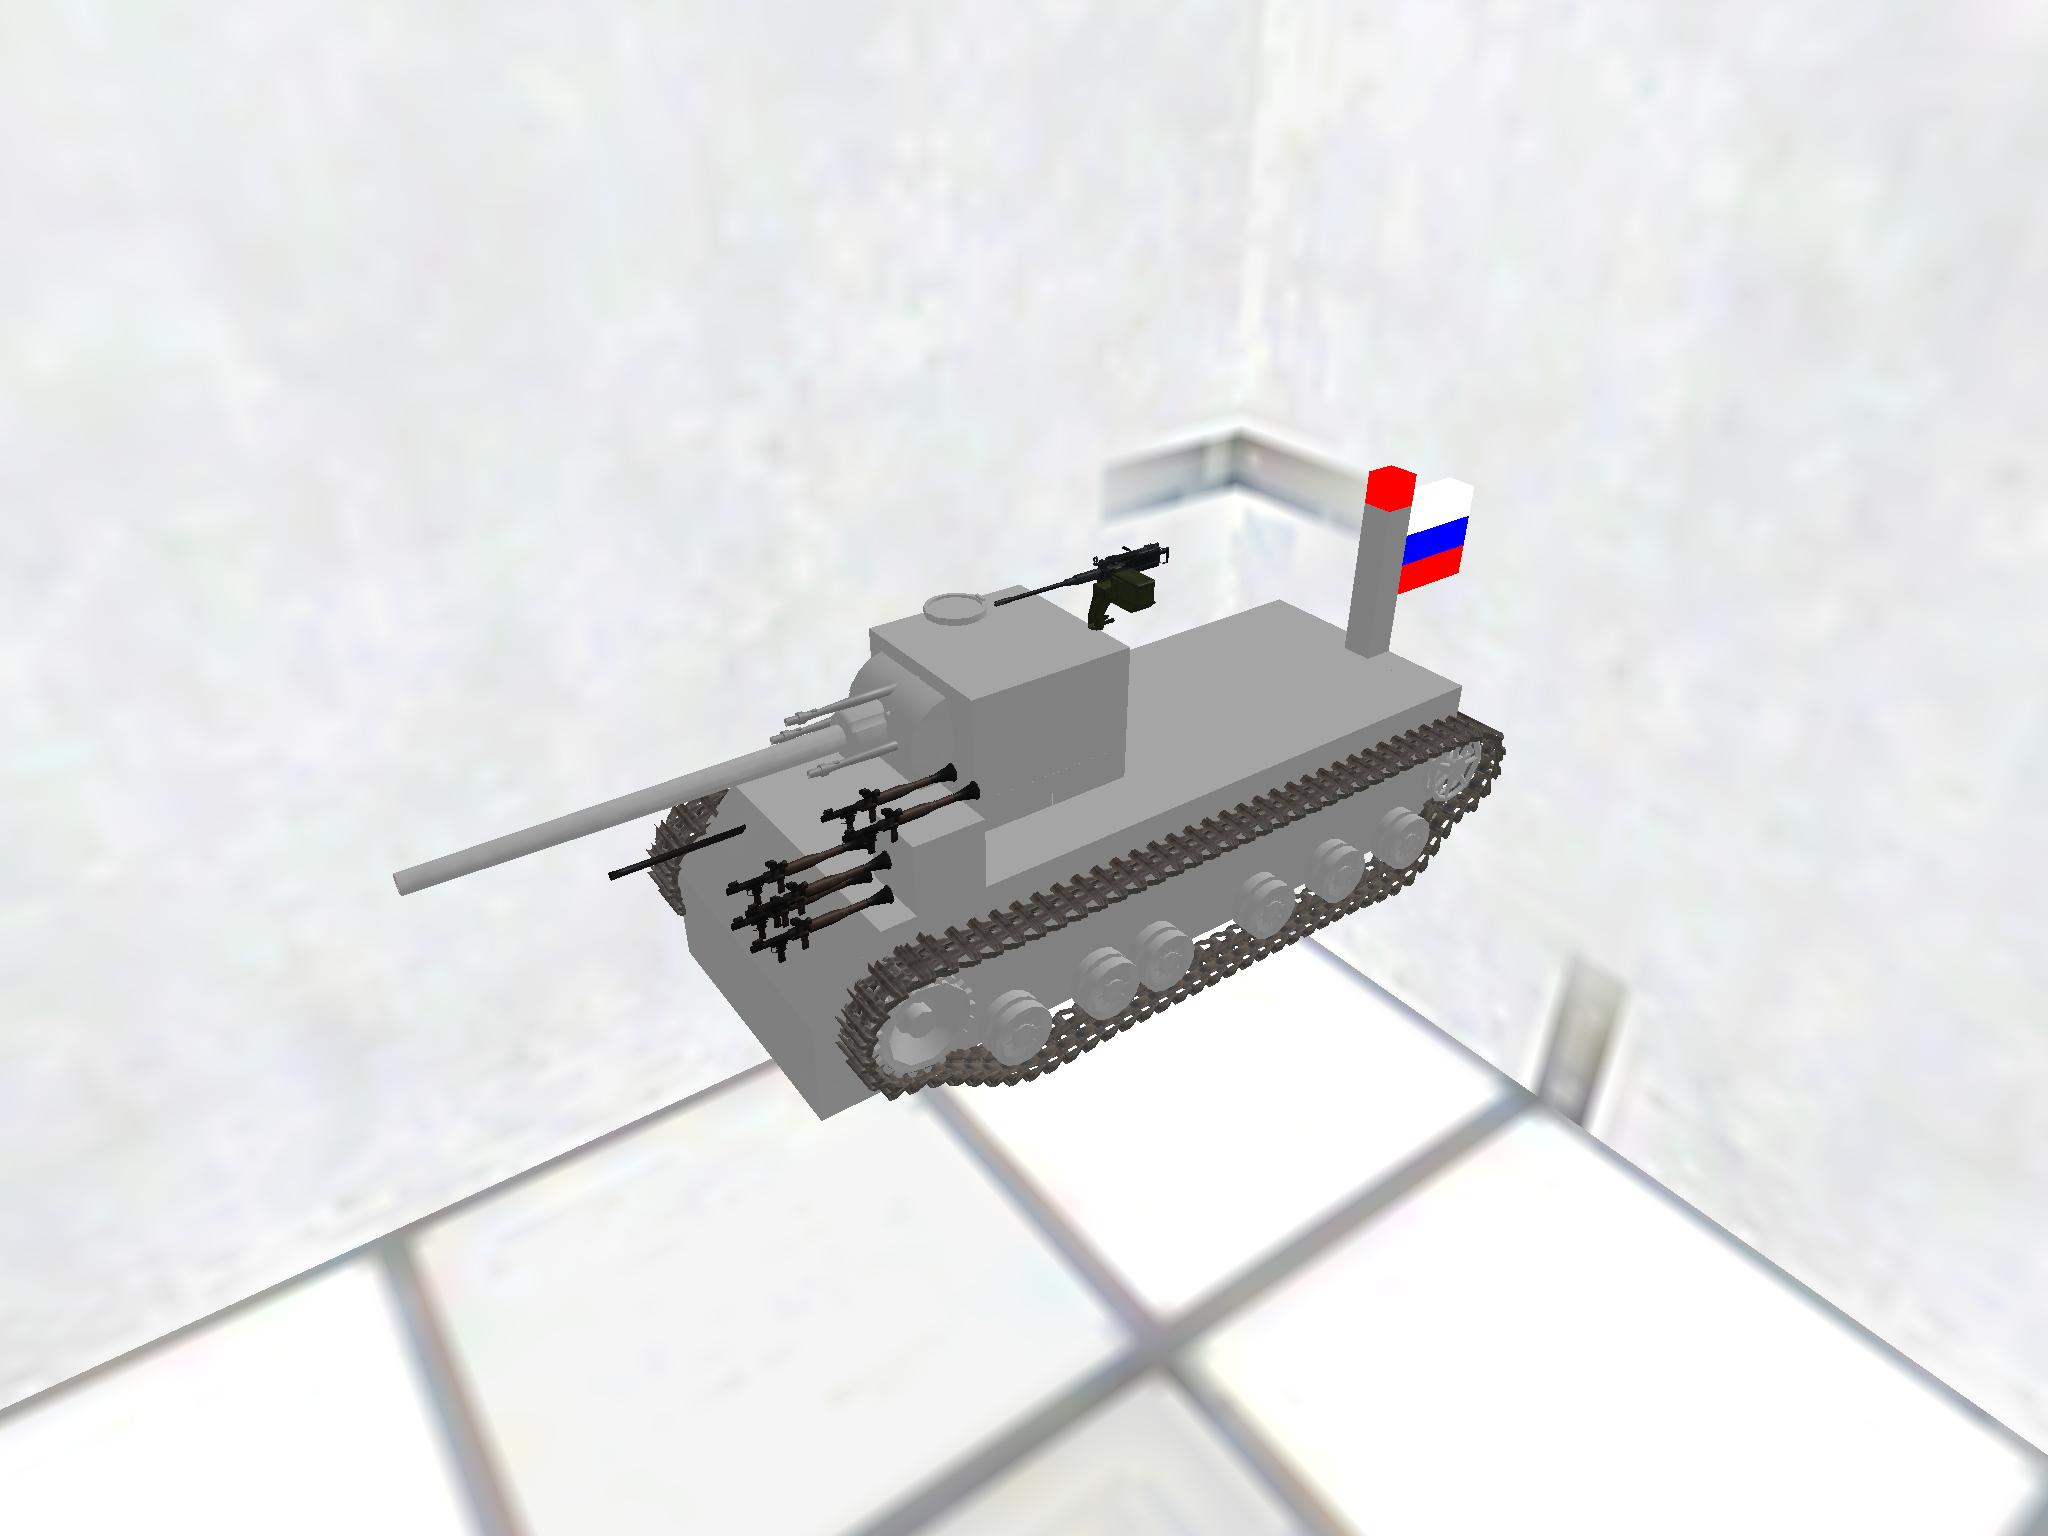 IS-1000 Super heavy tank